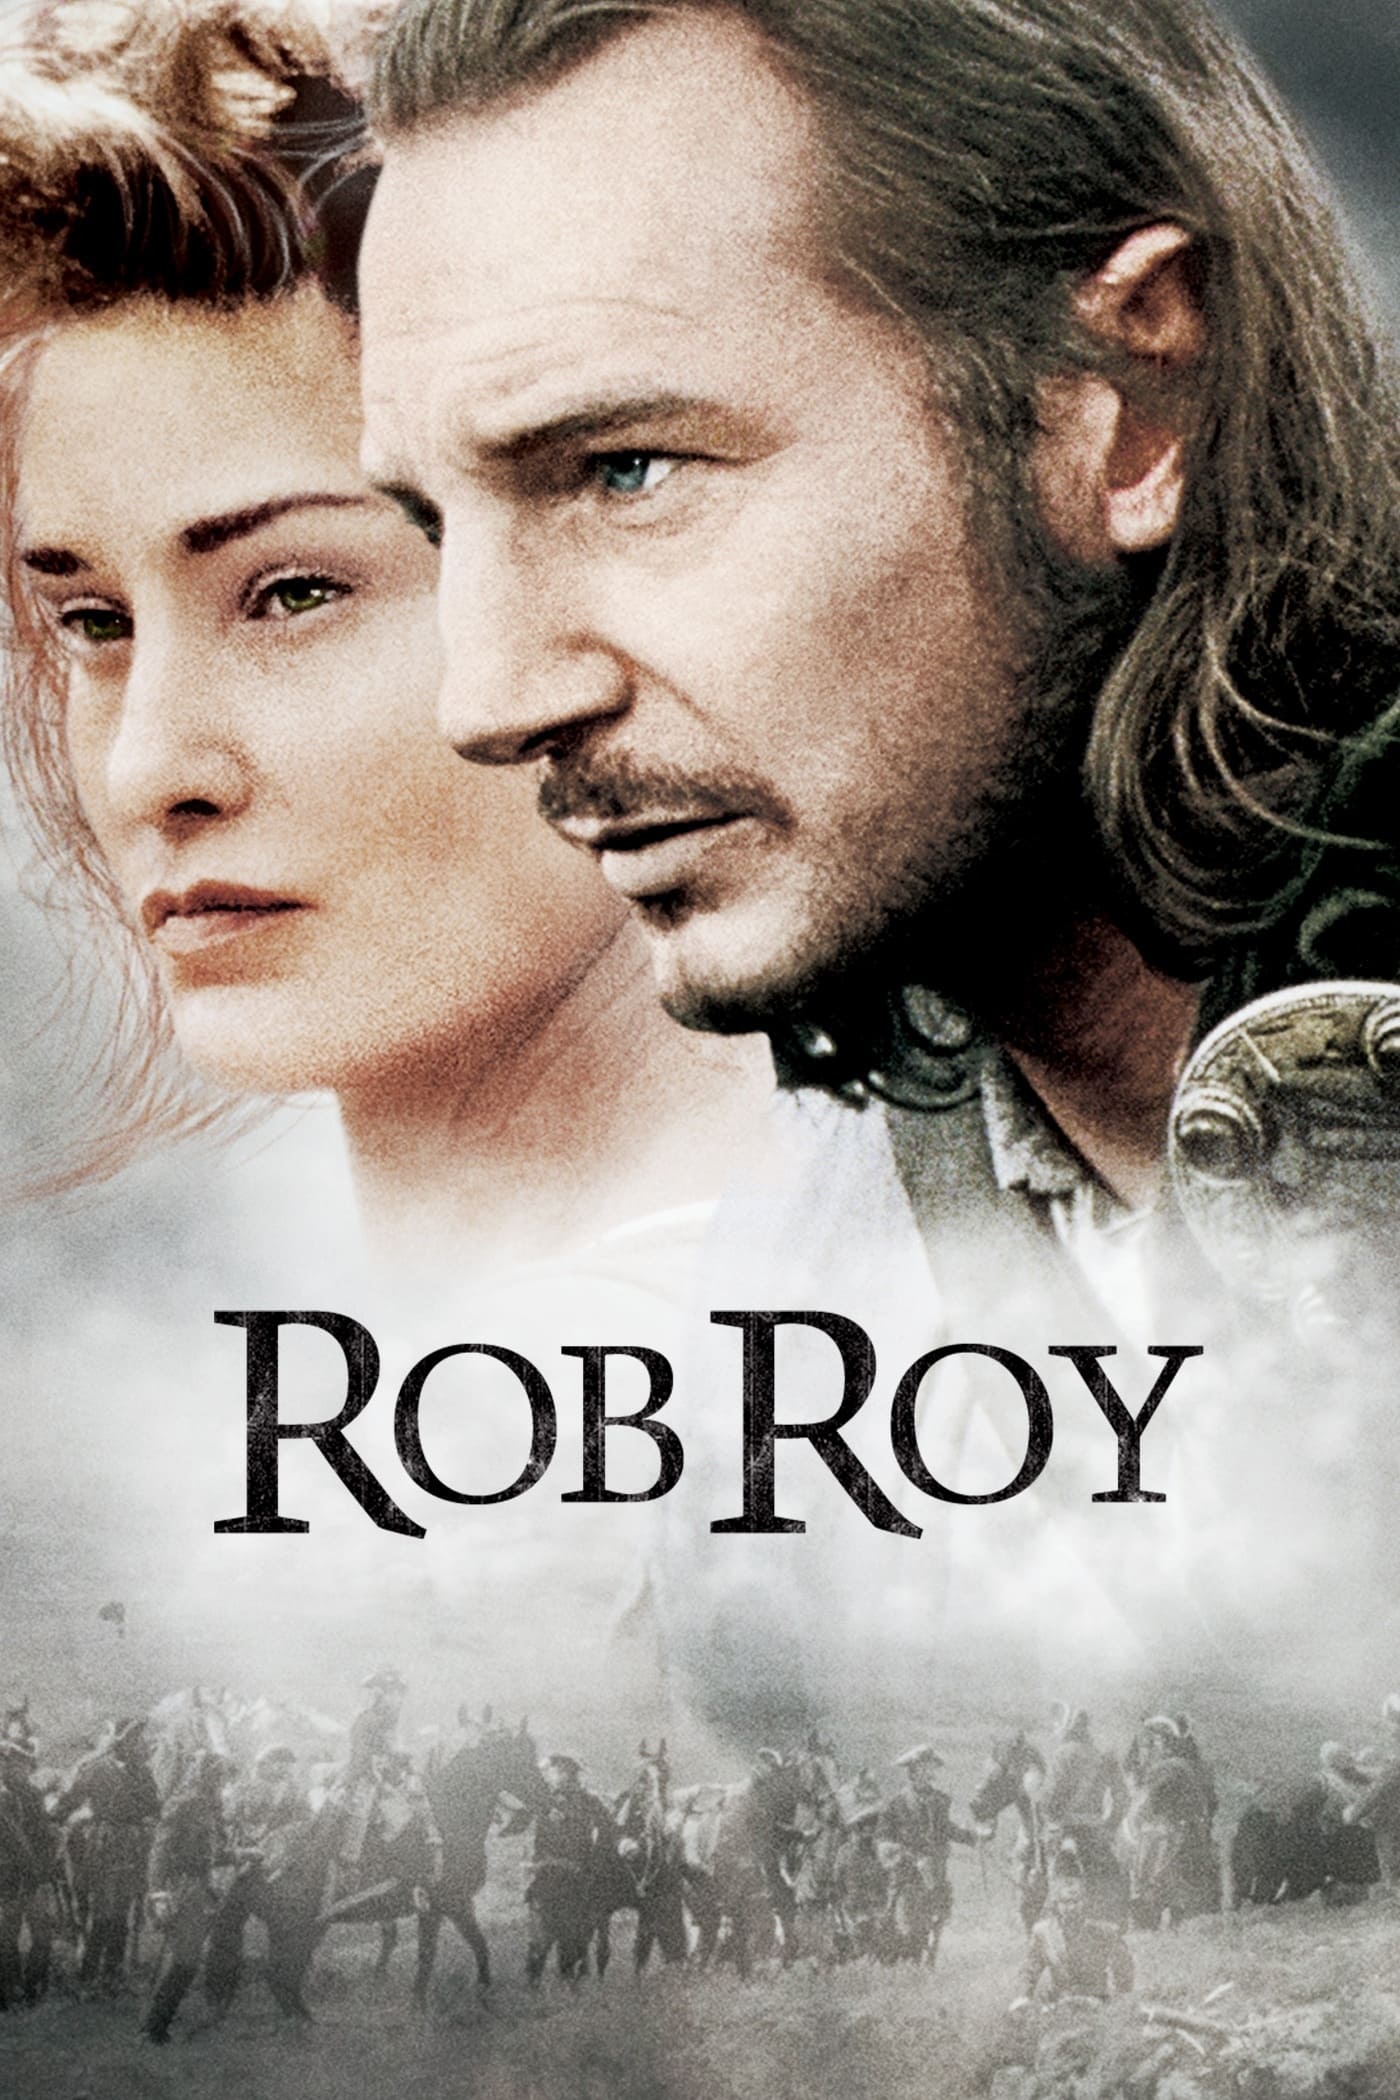 Rob Roy, la pasión de un rebelde